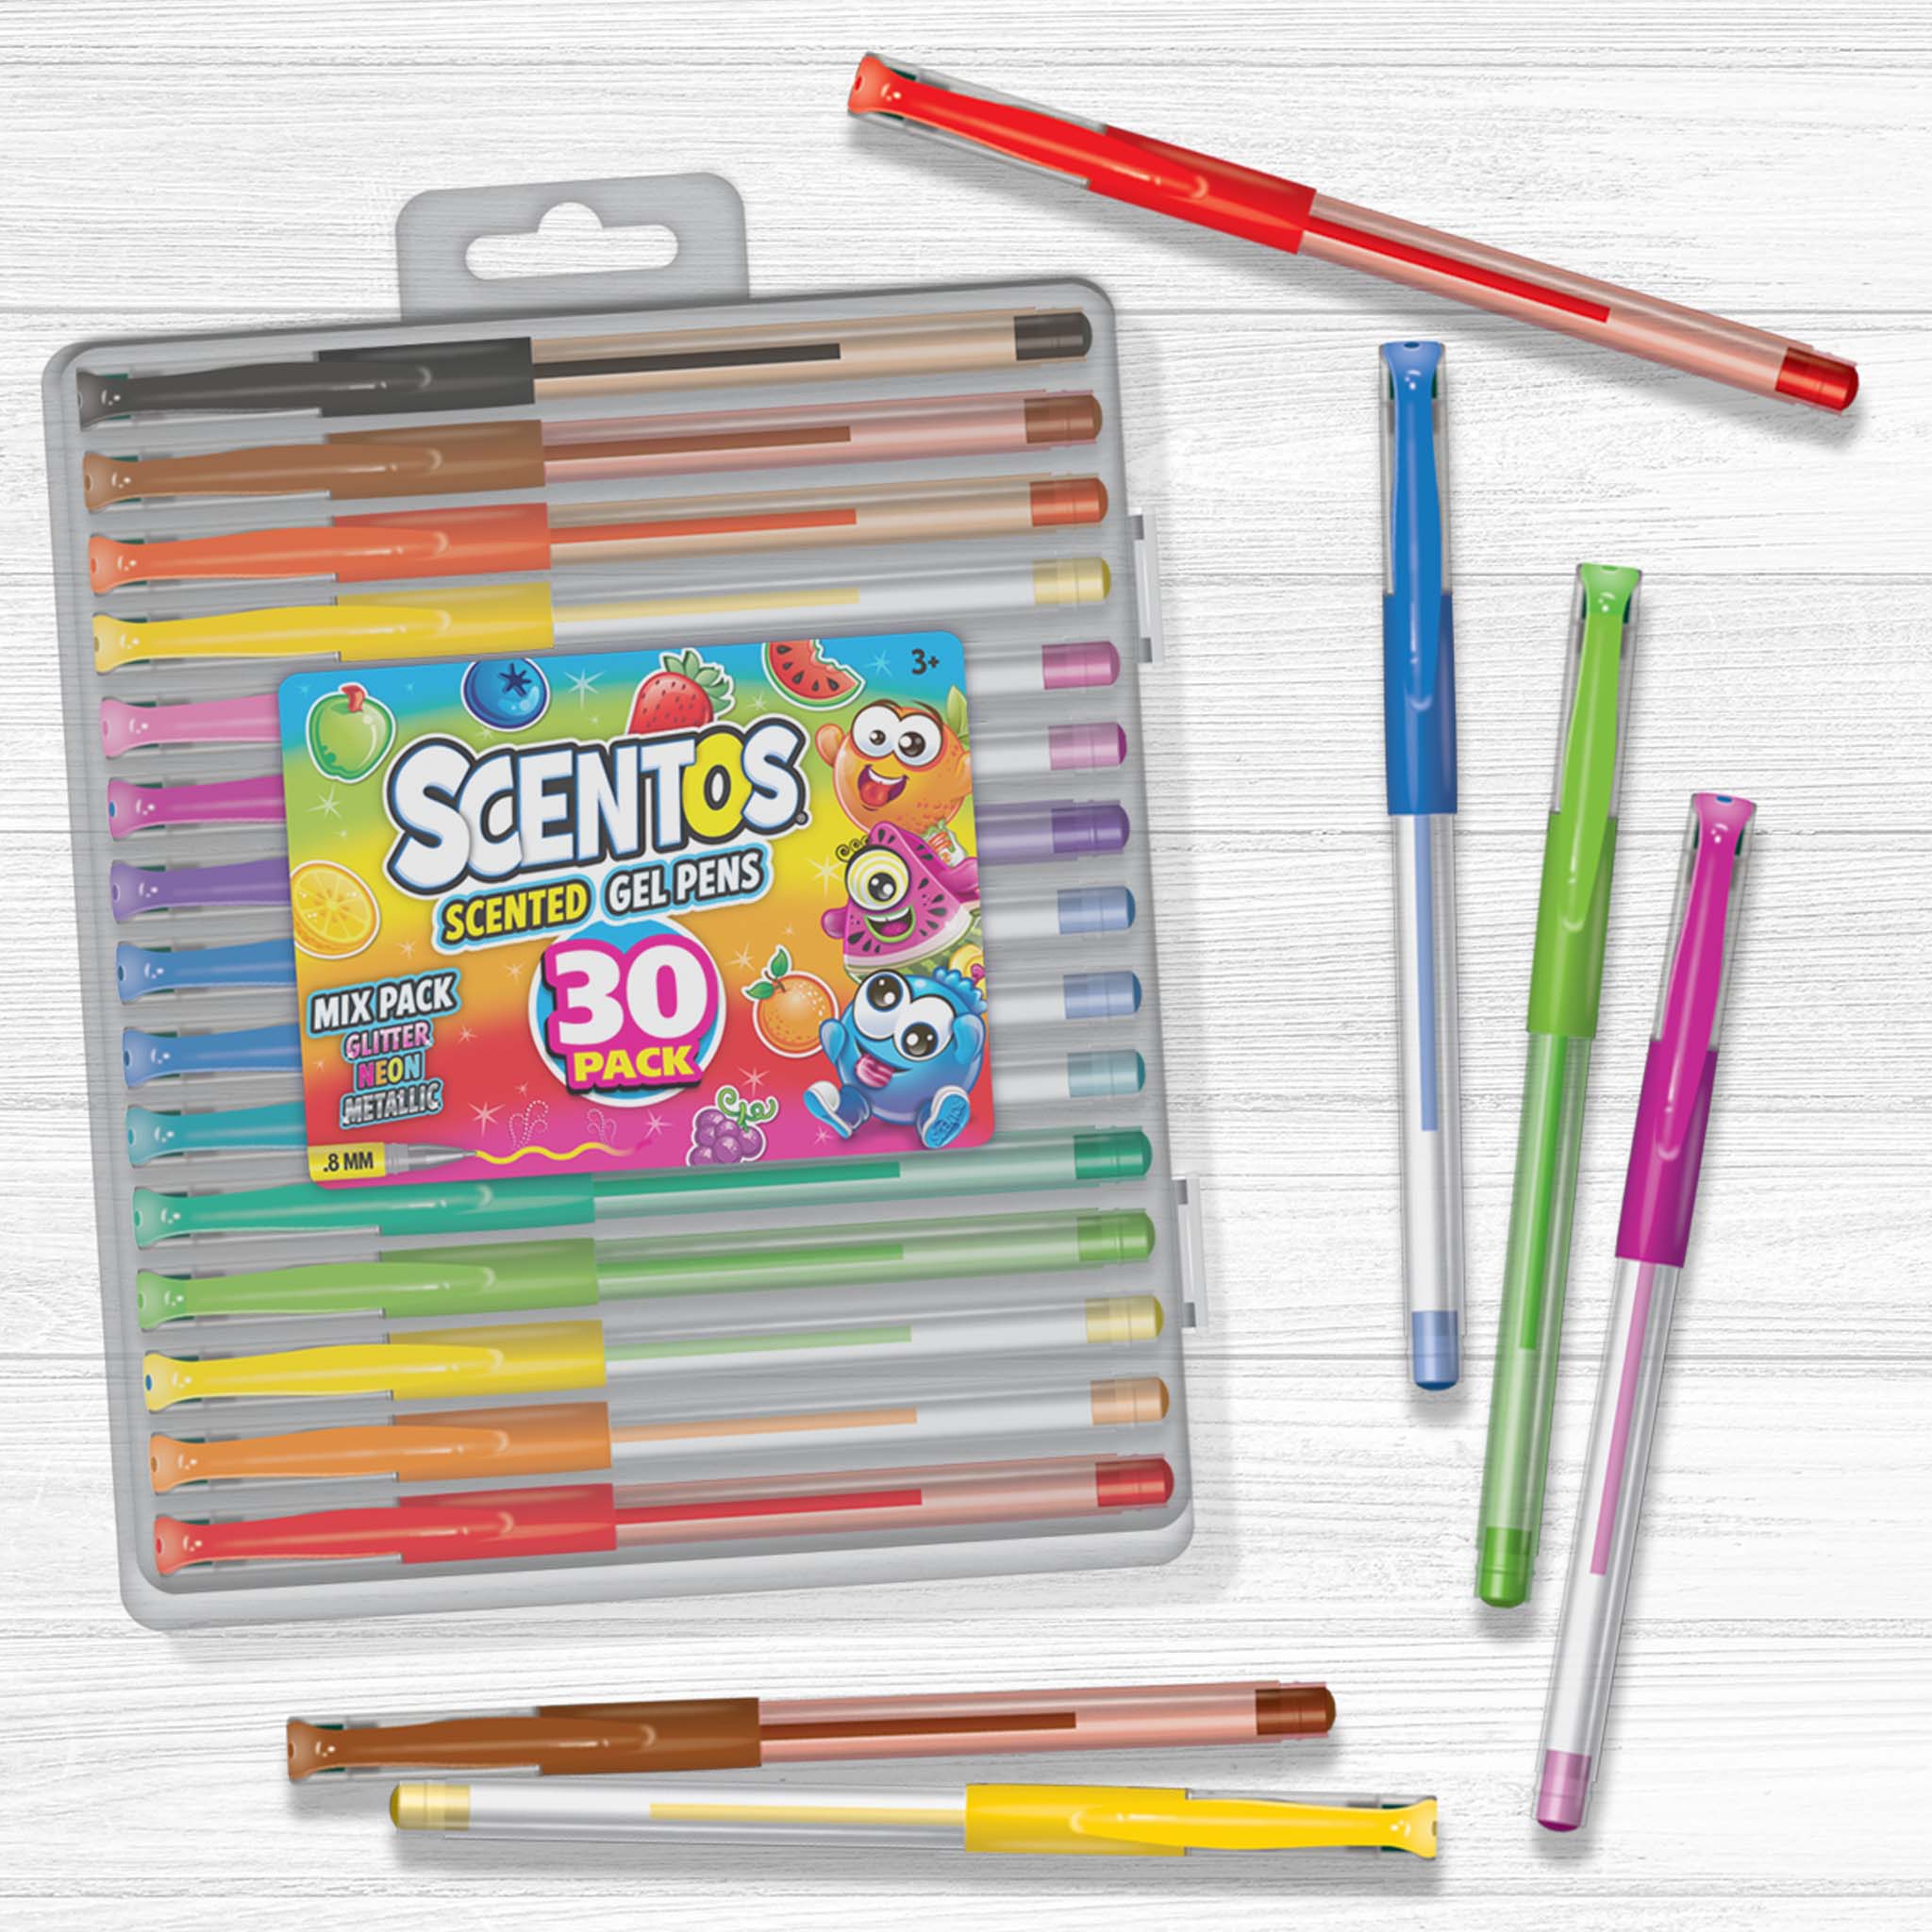 https://shopscentos.com/cdn/shop/files/shopscentos-gel-pen-scentos-scented-fine-point-gel-pen-30-pack-set-41544332476706.jpg?v=1698247624